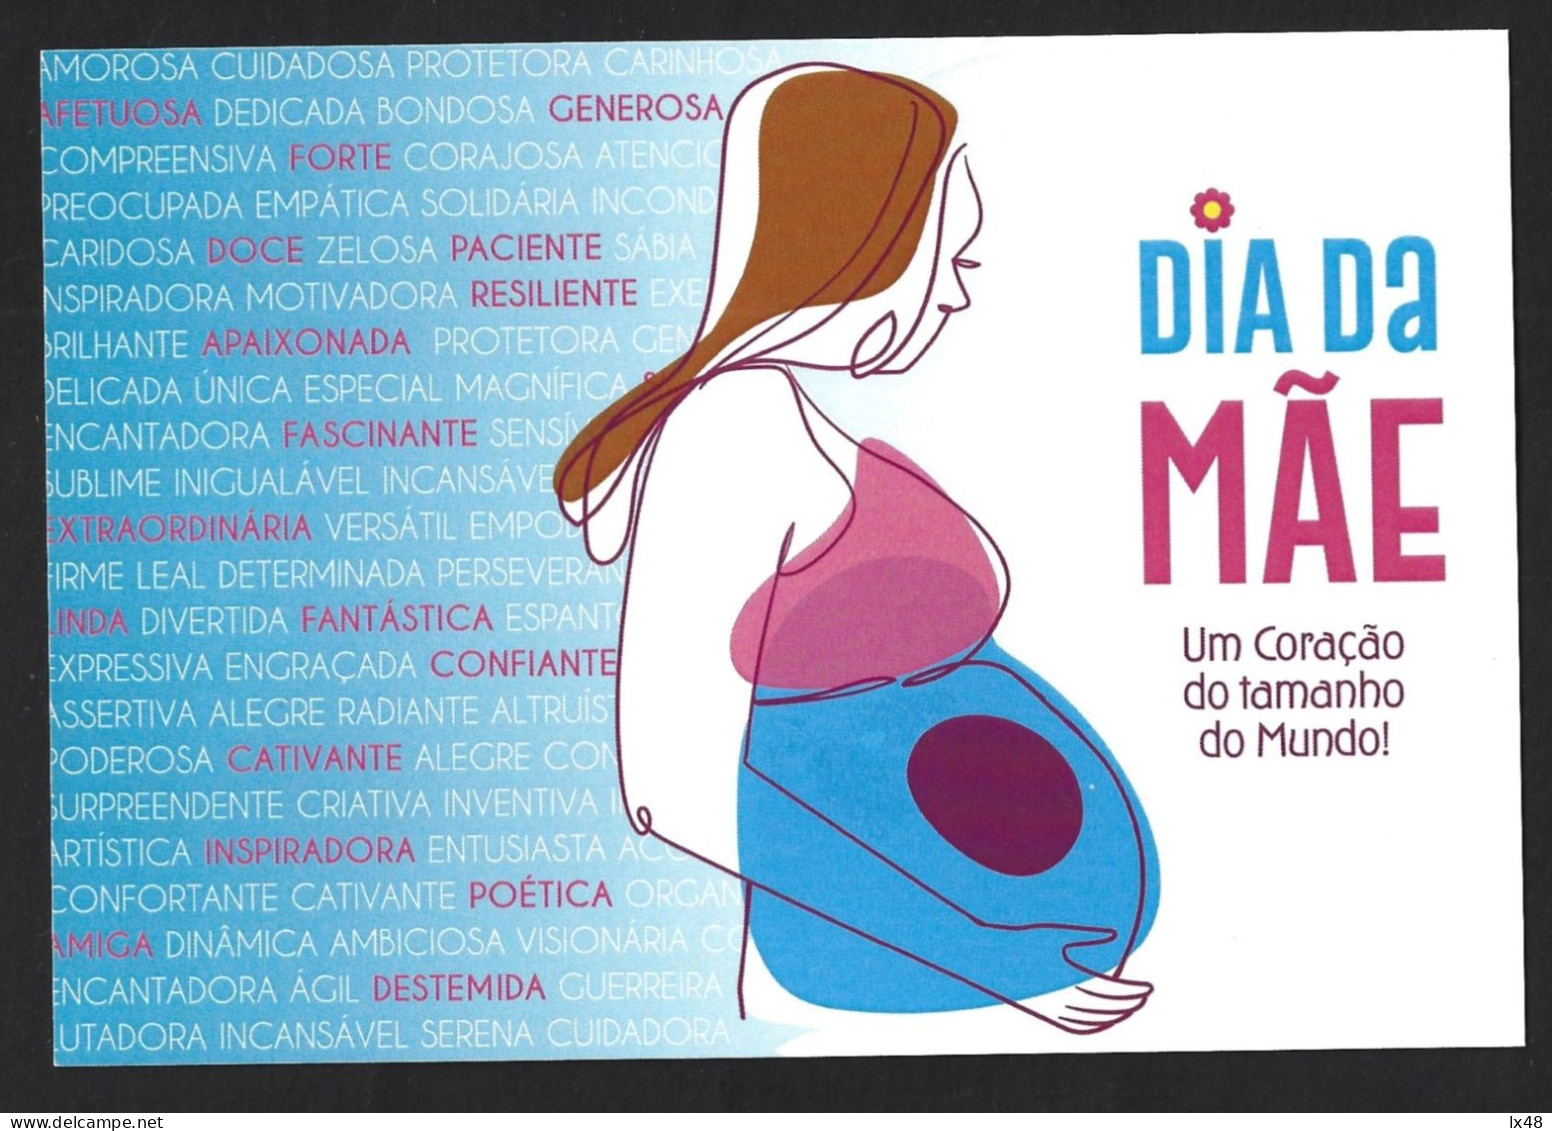 Pregnancy. Cesarean Section. Childbirth. Baby Birth. Entire Mother's Day Postcard. Schwangerschaft. Kaiserschnitt. Gebur - EHBO